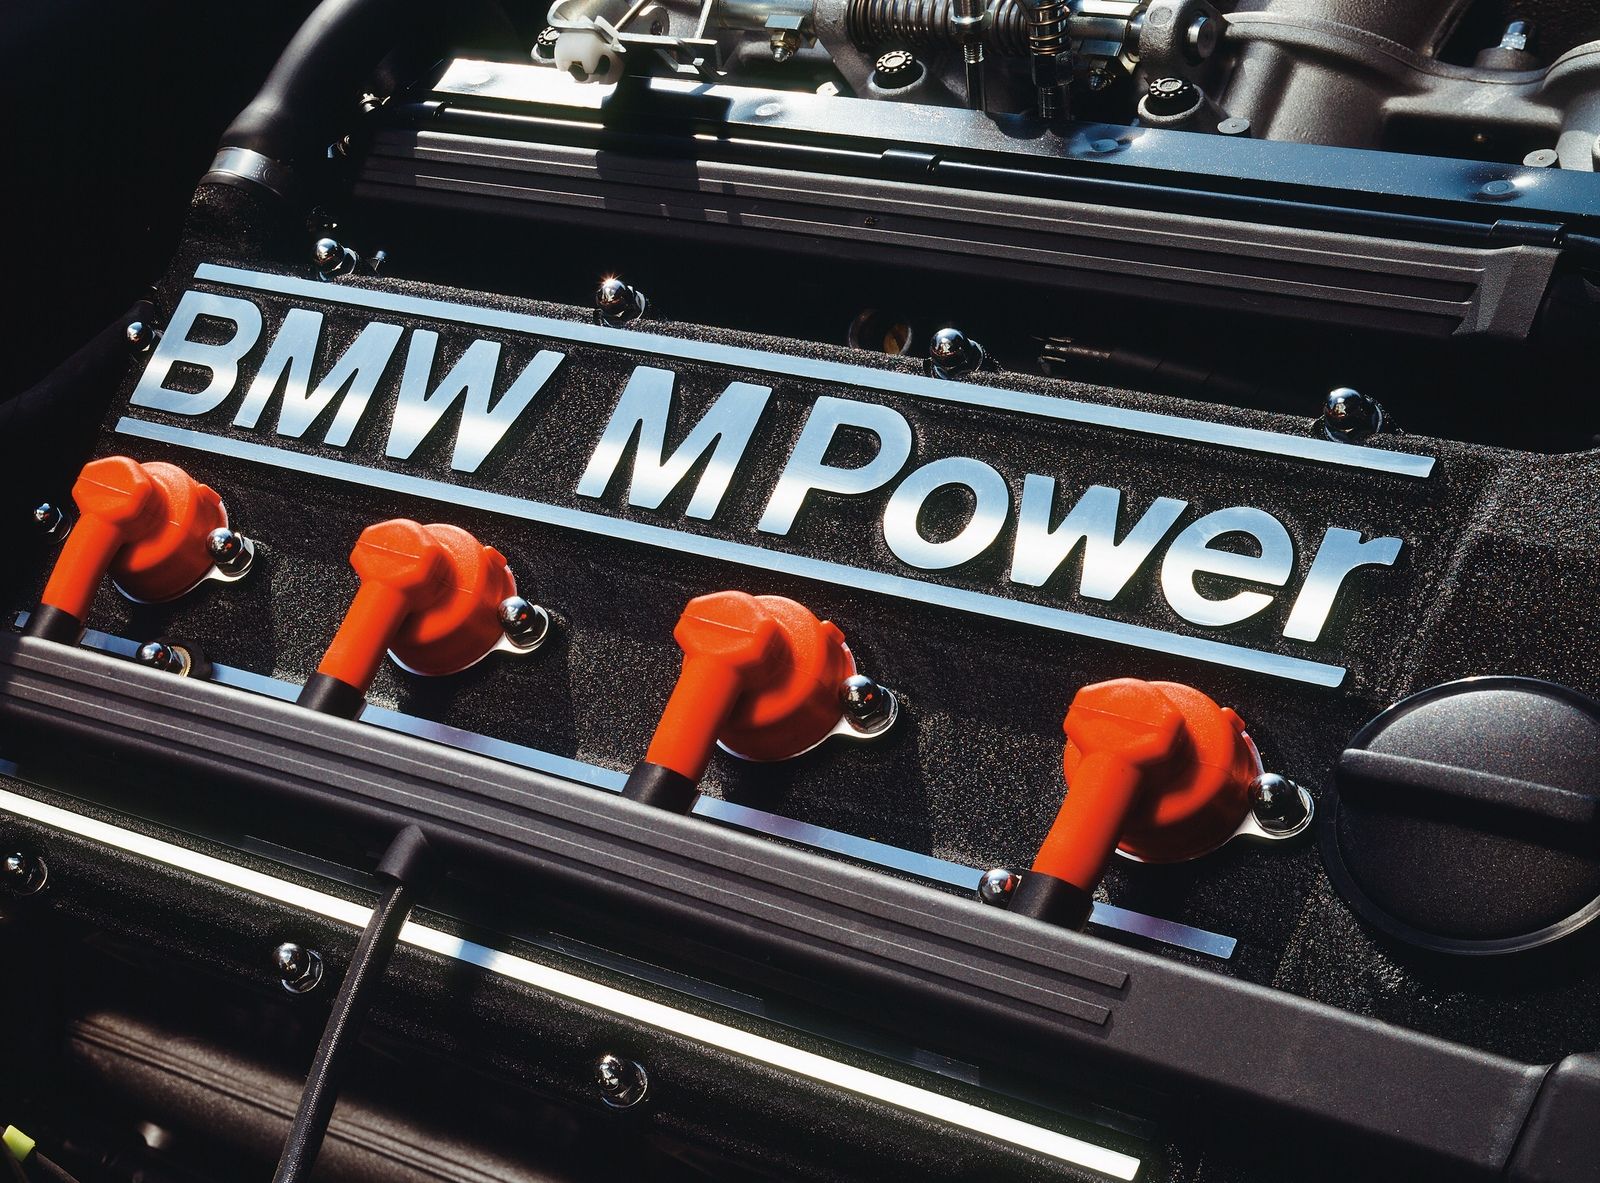 buduca BMW M3 mozno bude mat 4-valec